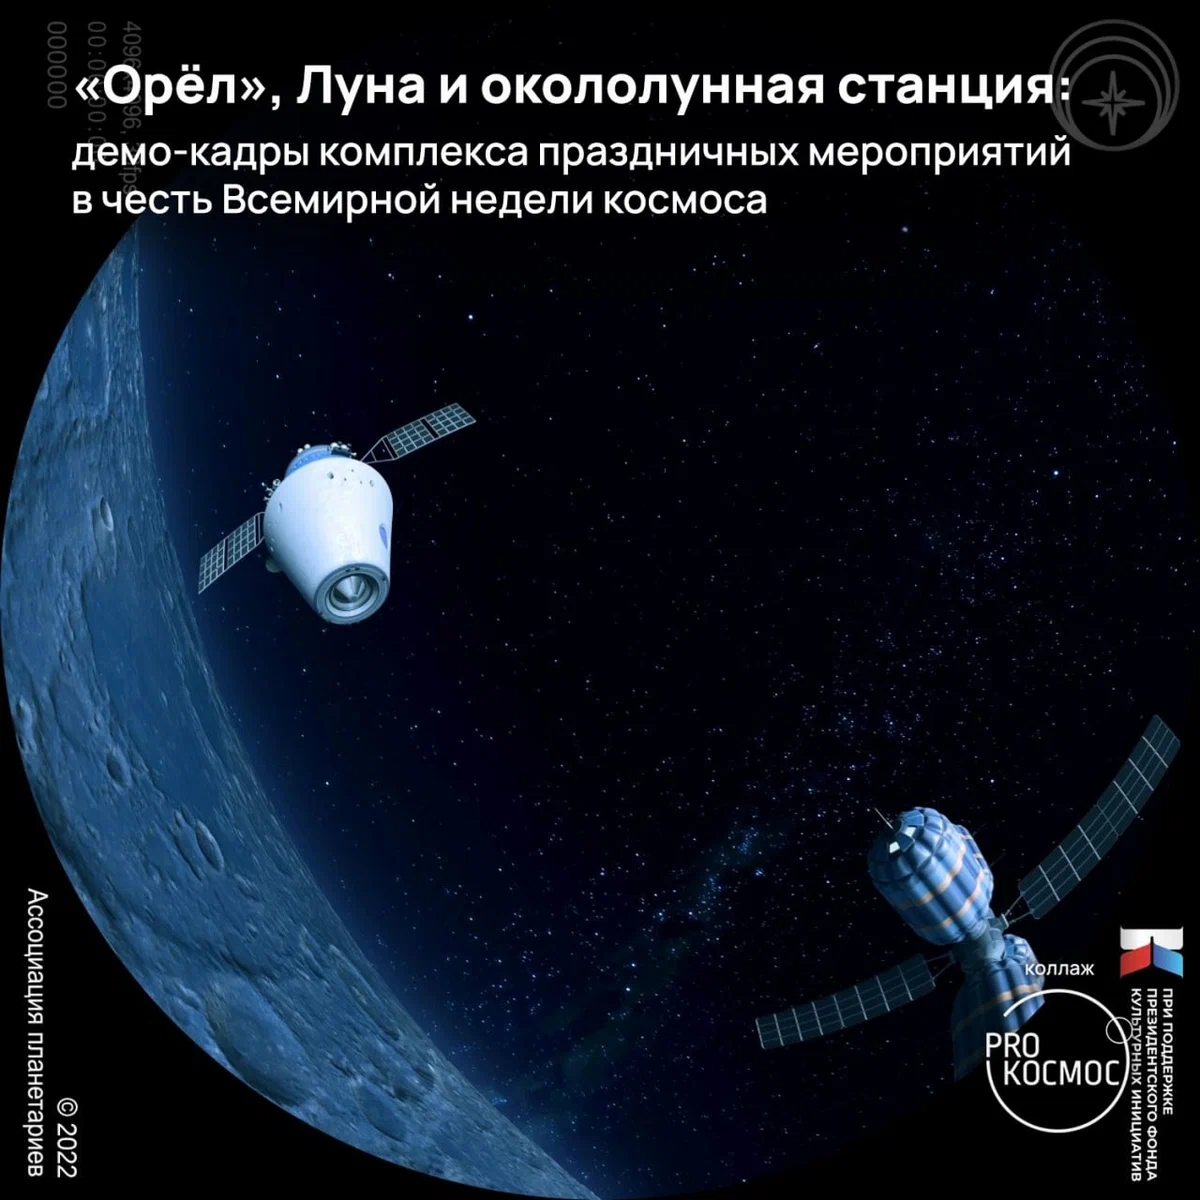 Ежегодная неделя космоса: как «Спутник-1» и спустя 65 лет вдохновляет новых мечтателей height=1200px width=1200px